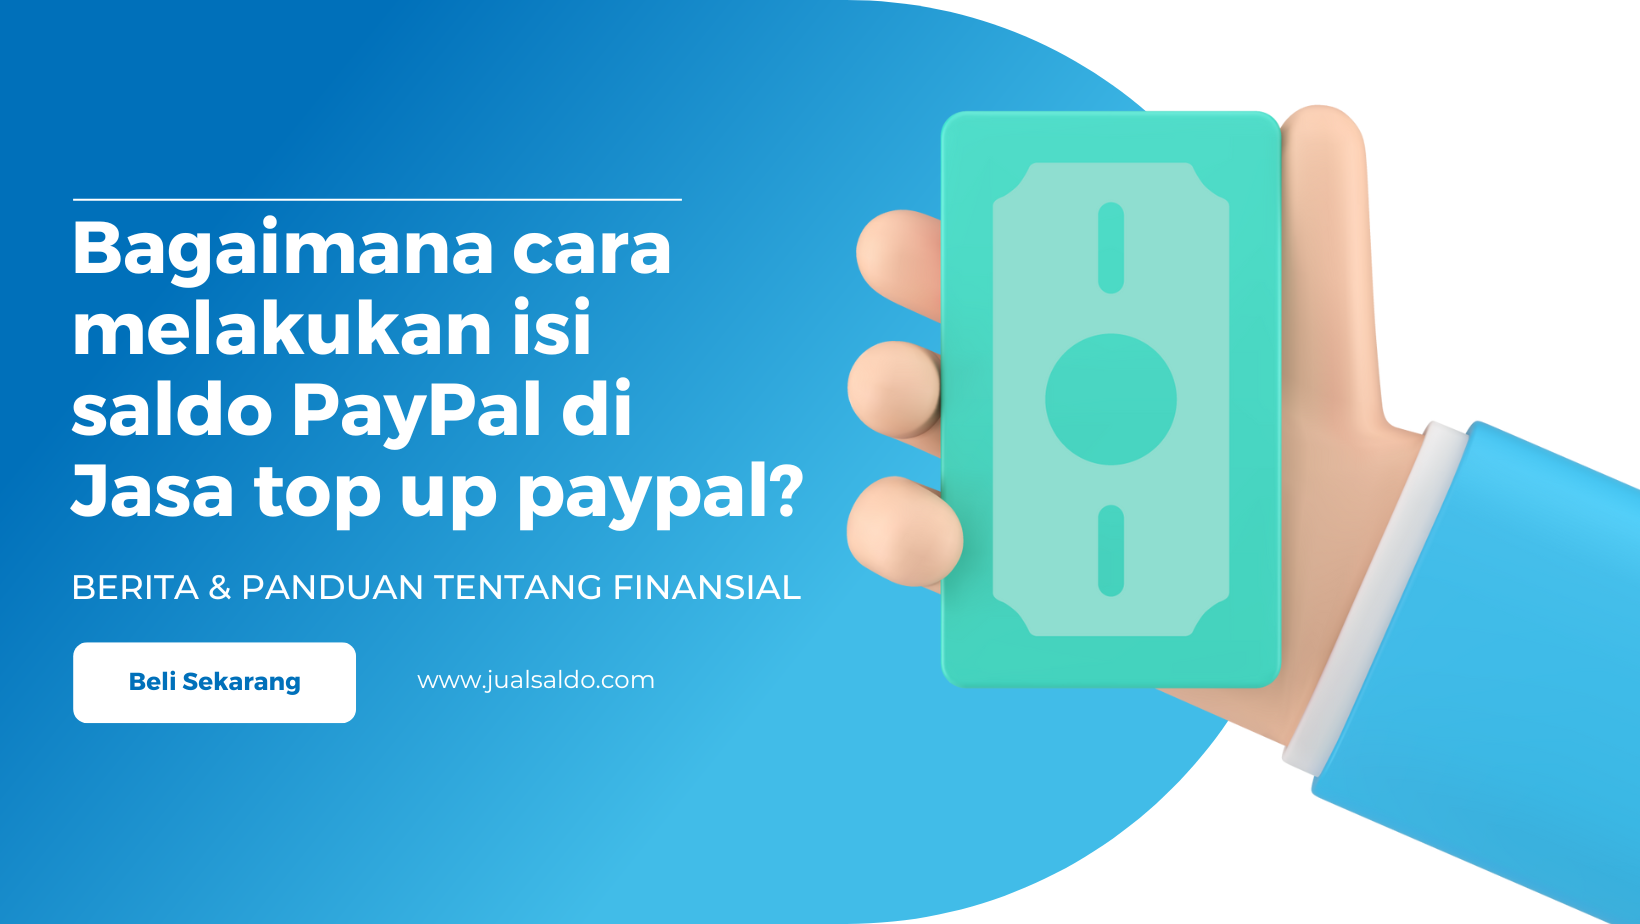 Bagaimana cara melakukan isi saldo PayPal di Jasa top up paypal?